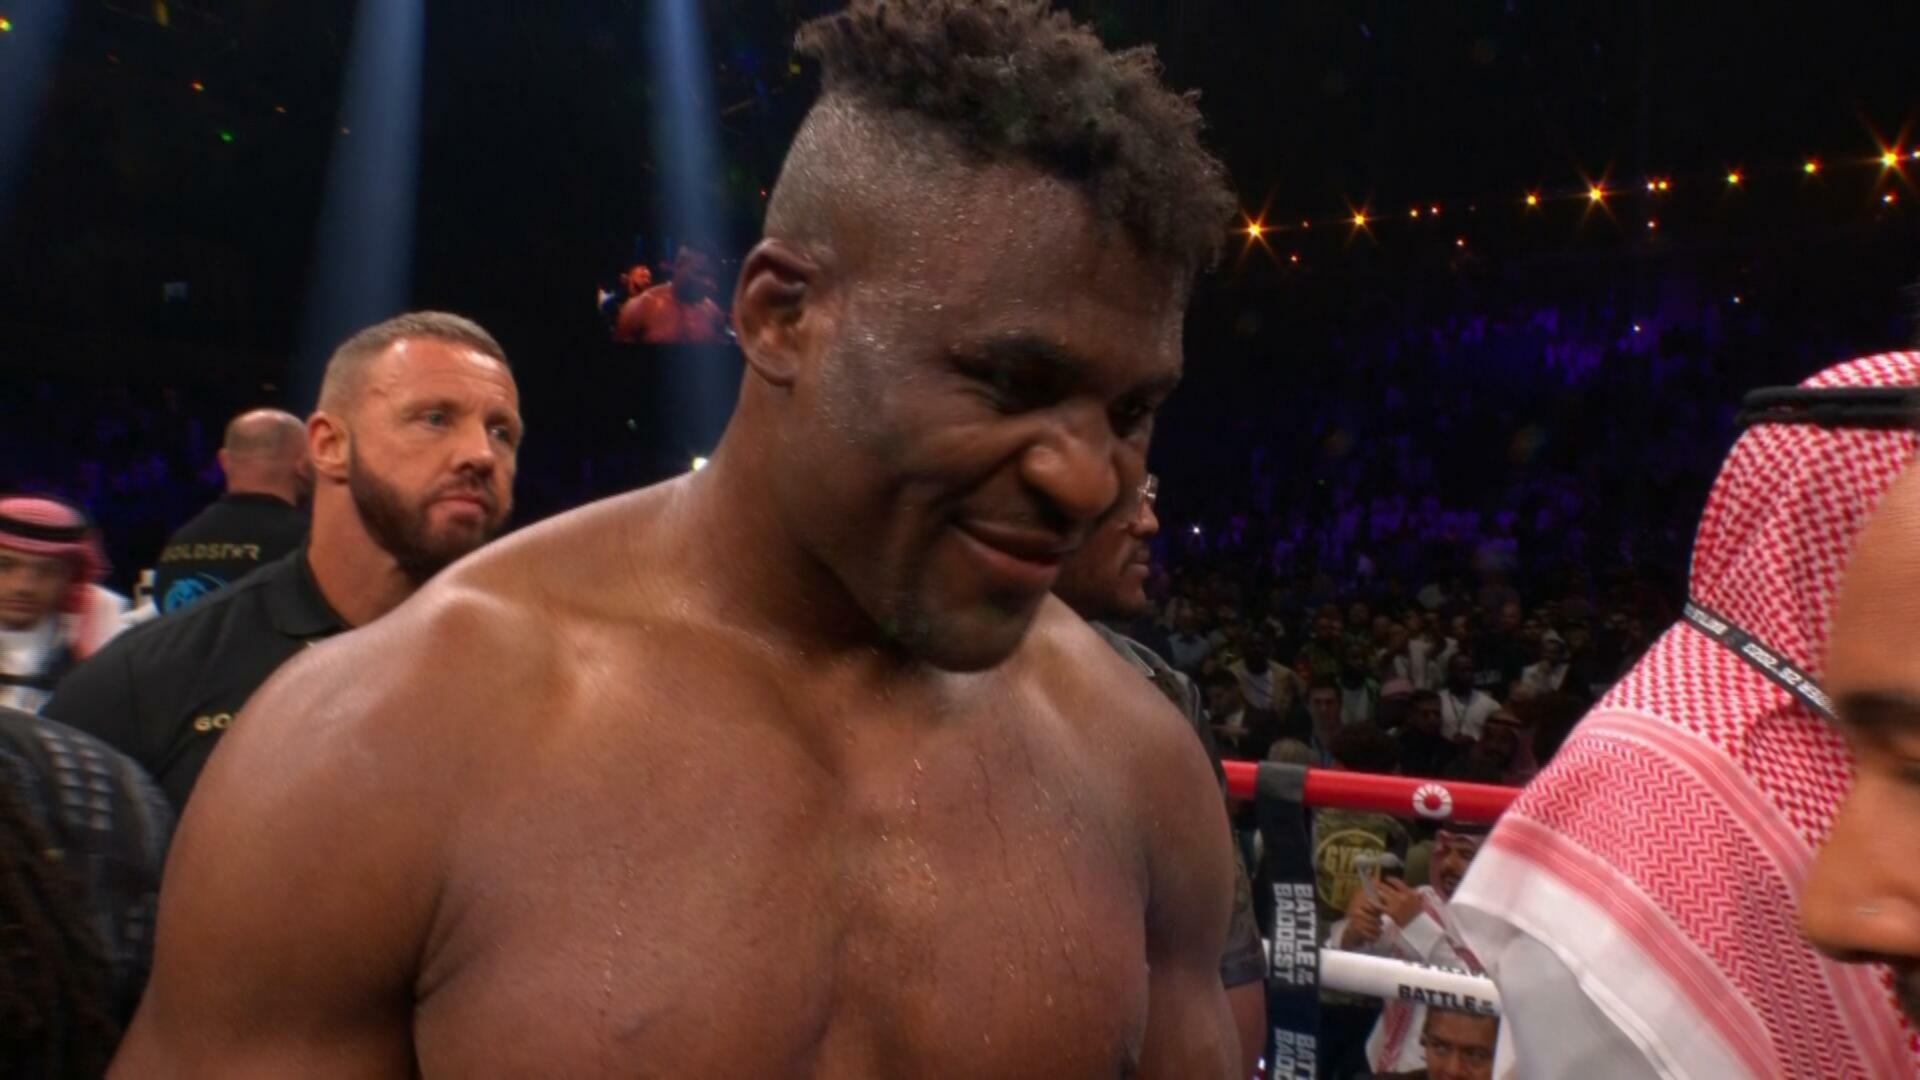 Boxing 2023 10 28 Tyson Fury Vs Francis Ngannou PPV 1080p HDTV H264 DARKSPORT TGx